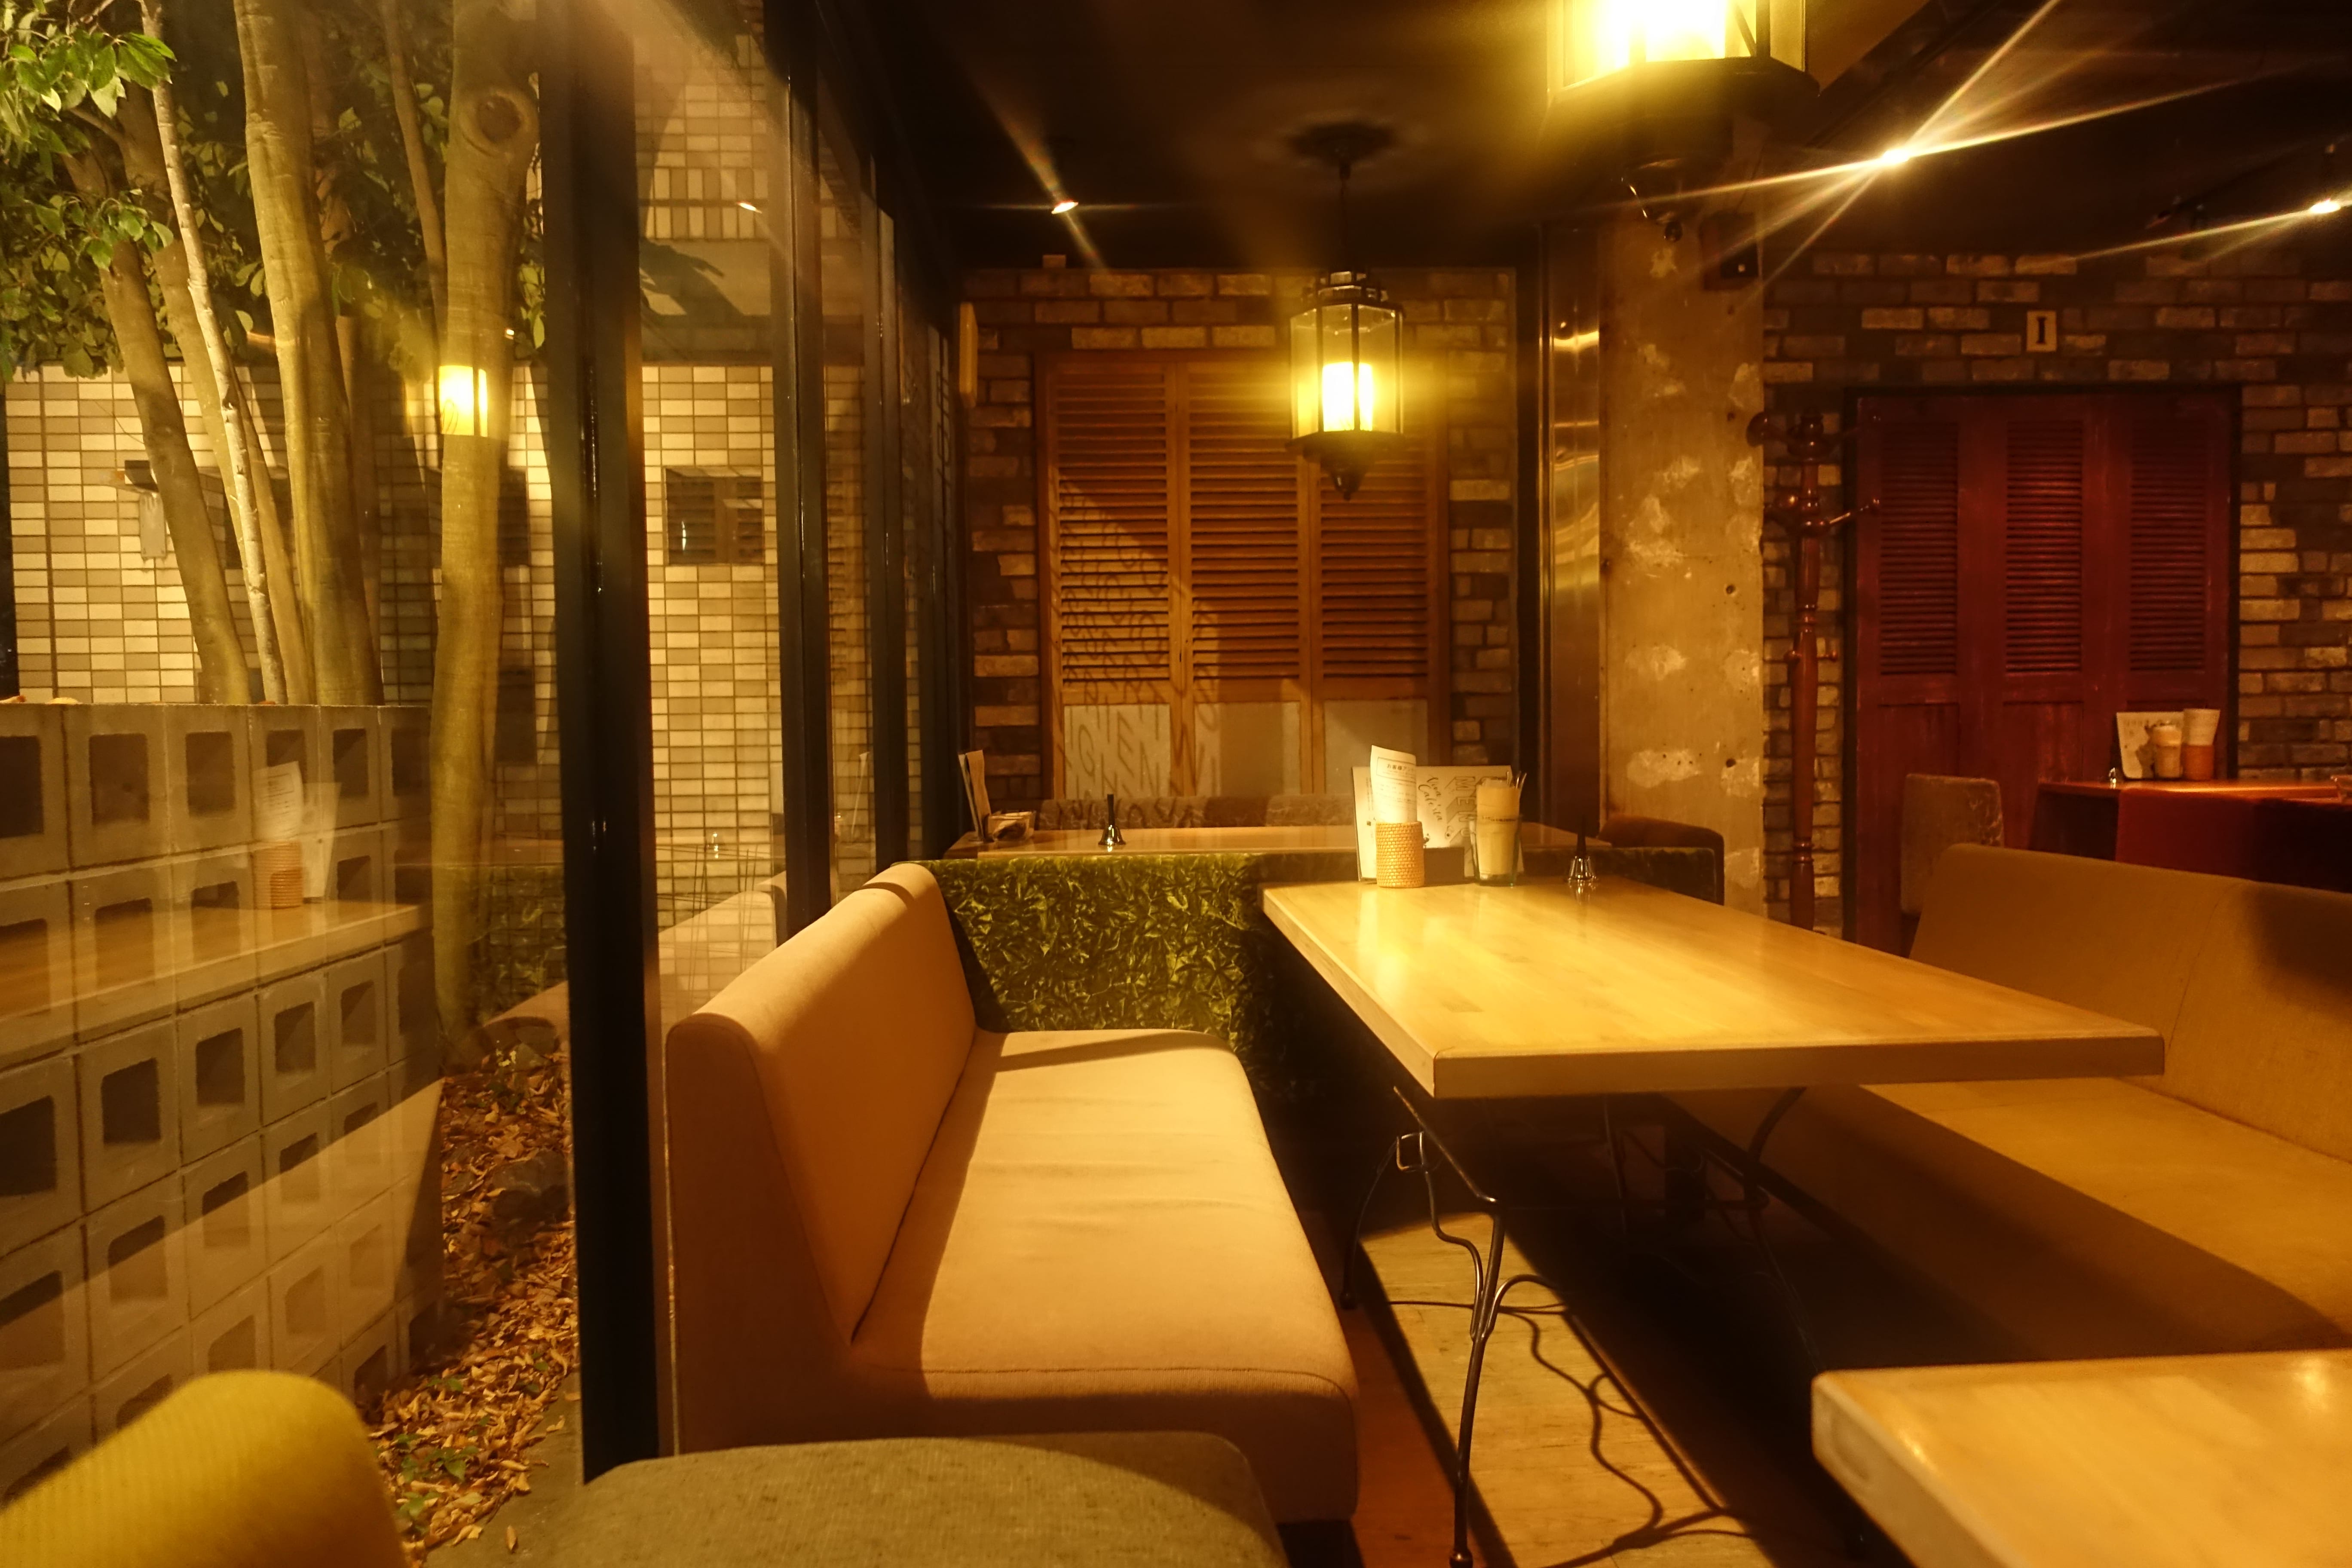 岡崎のビバカフェスタ おしゃれな夜カフェで人気 雰囲気素敵です 岡崎にゅーす